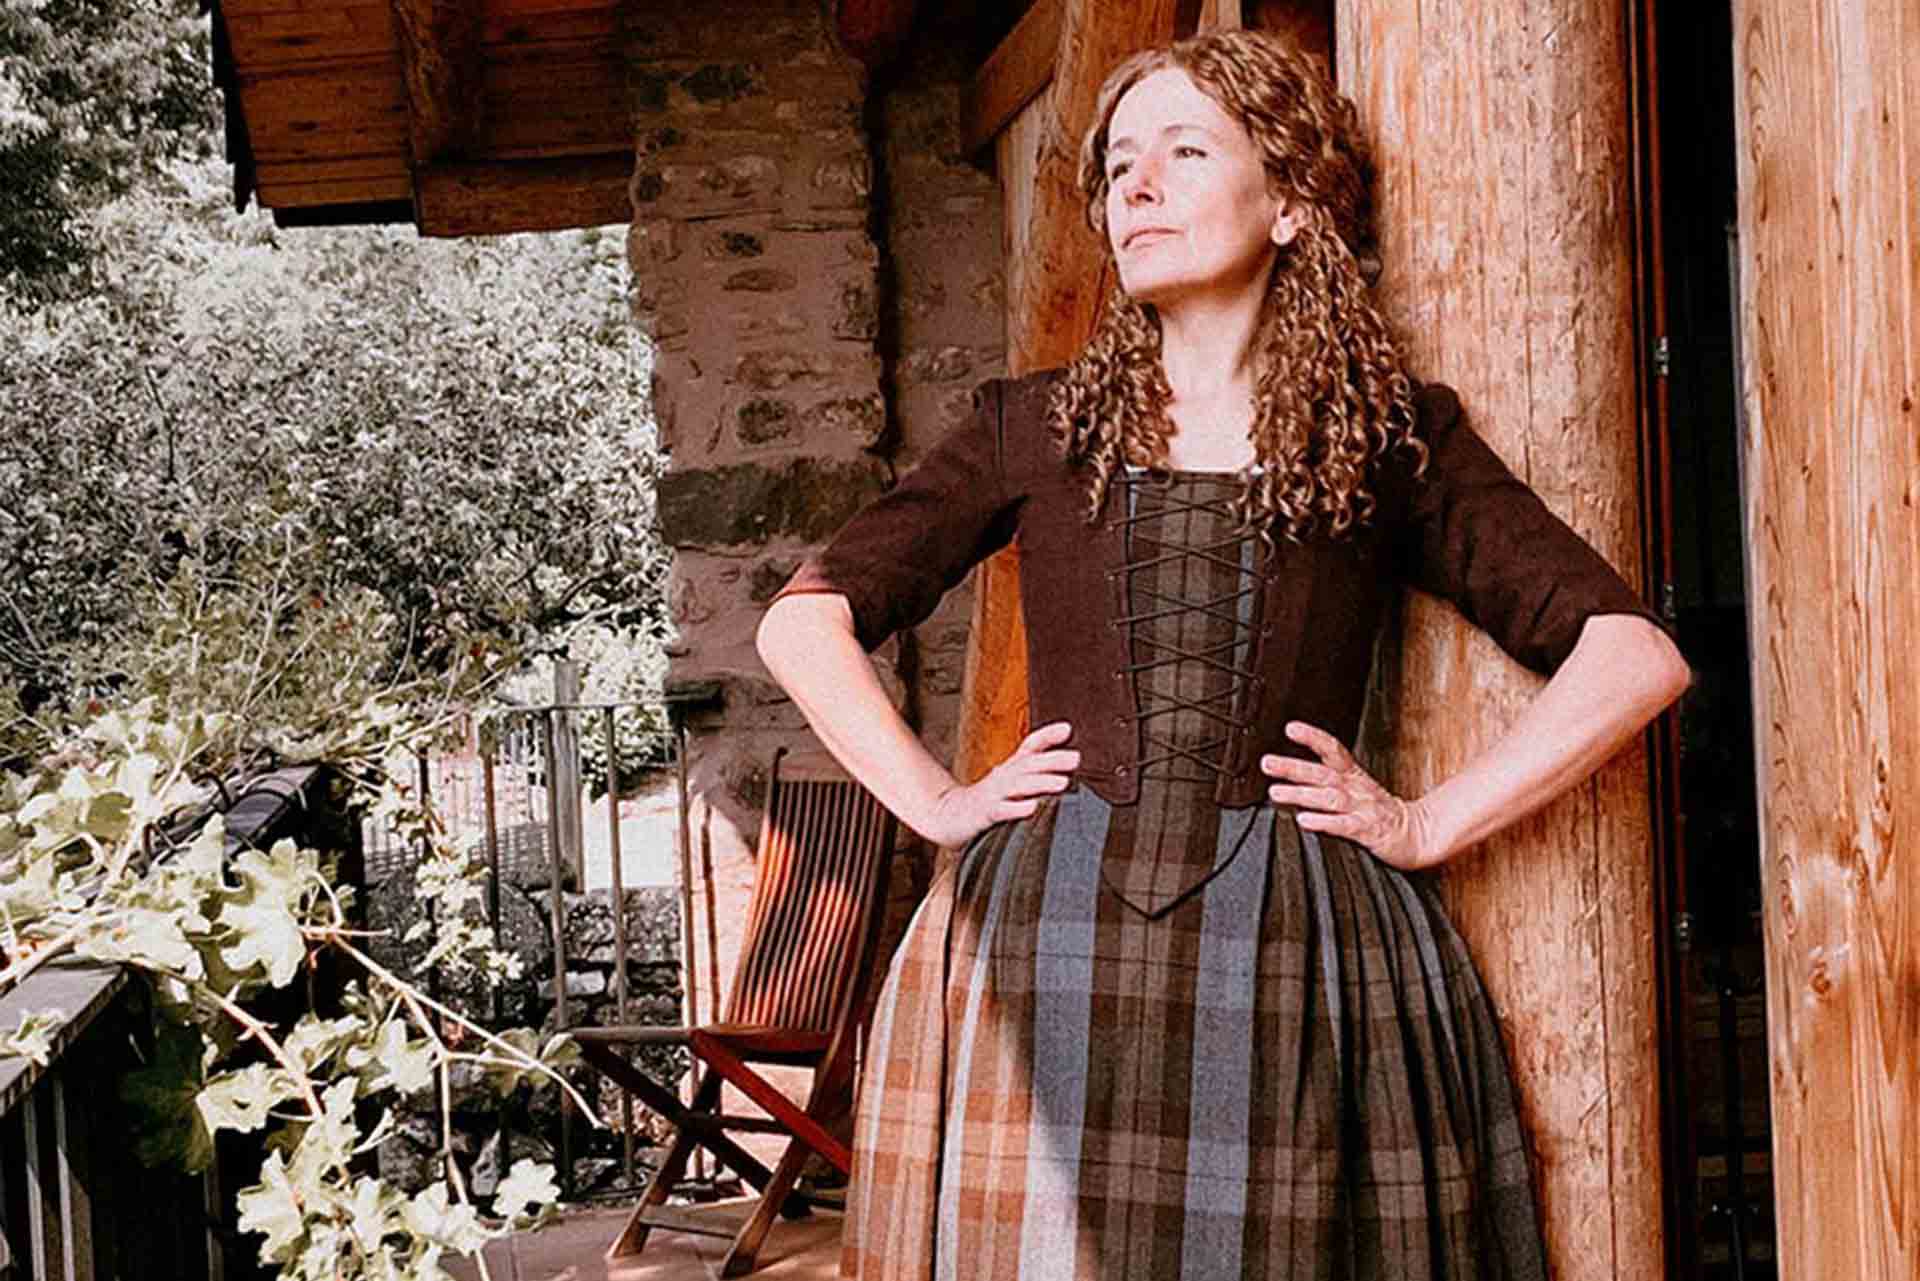 Outlander Costumes in Linen & Tartan - Atelier Serraspina